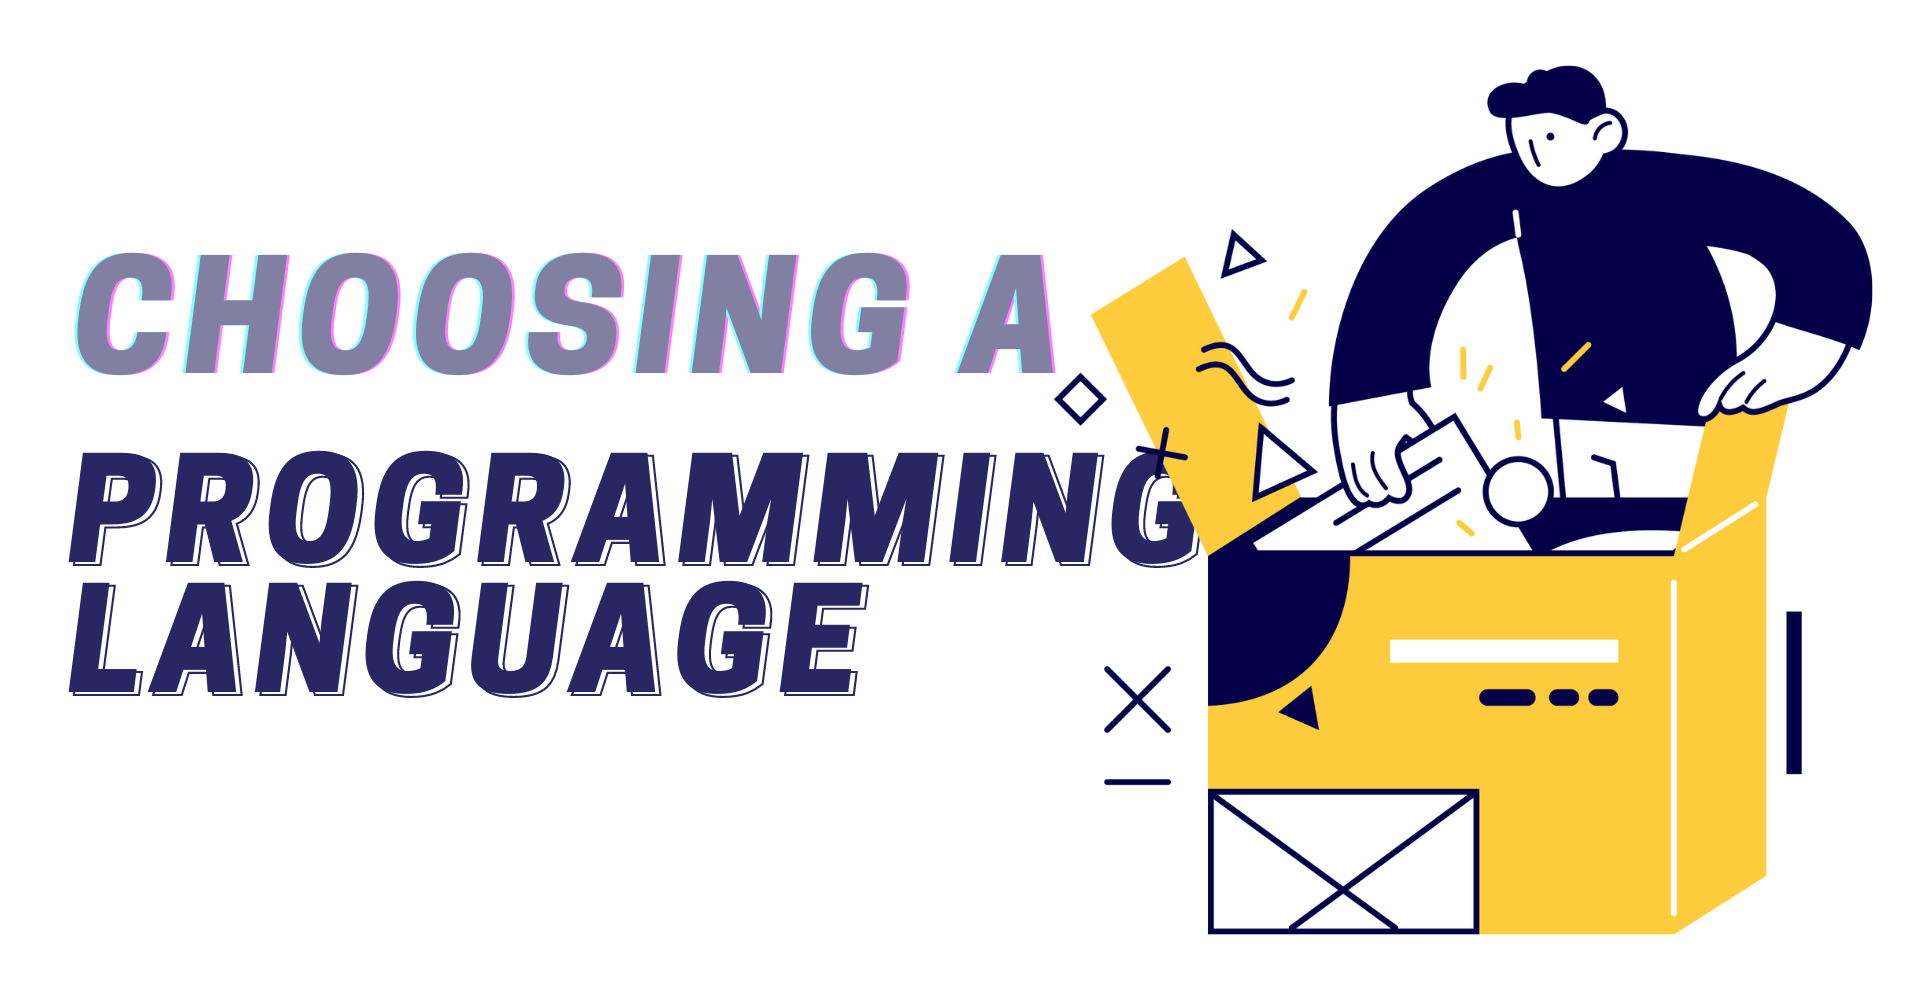 Choosing a programming language